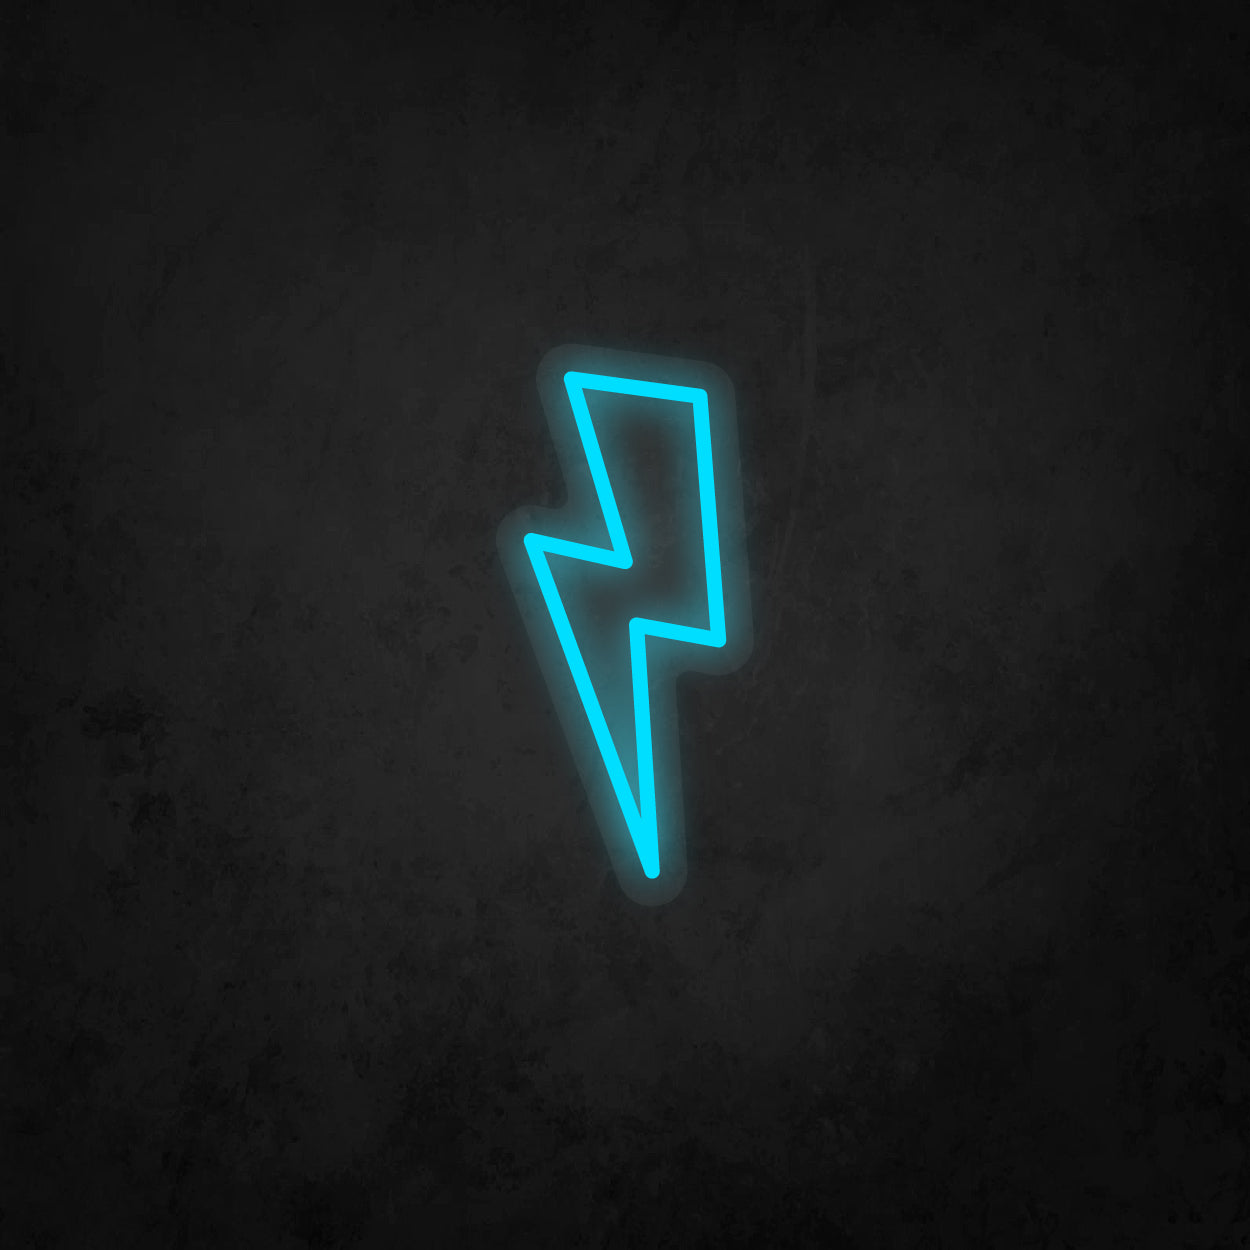 LED Neon Sign - Lightning Bolt Small